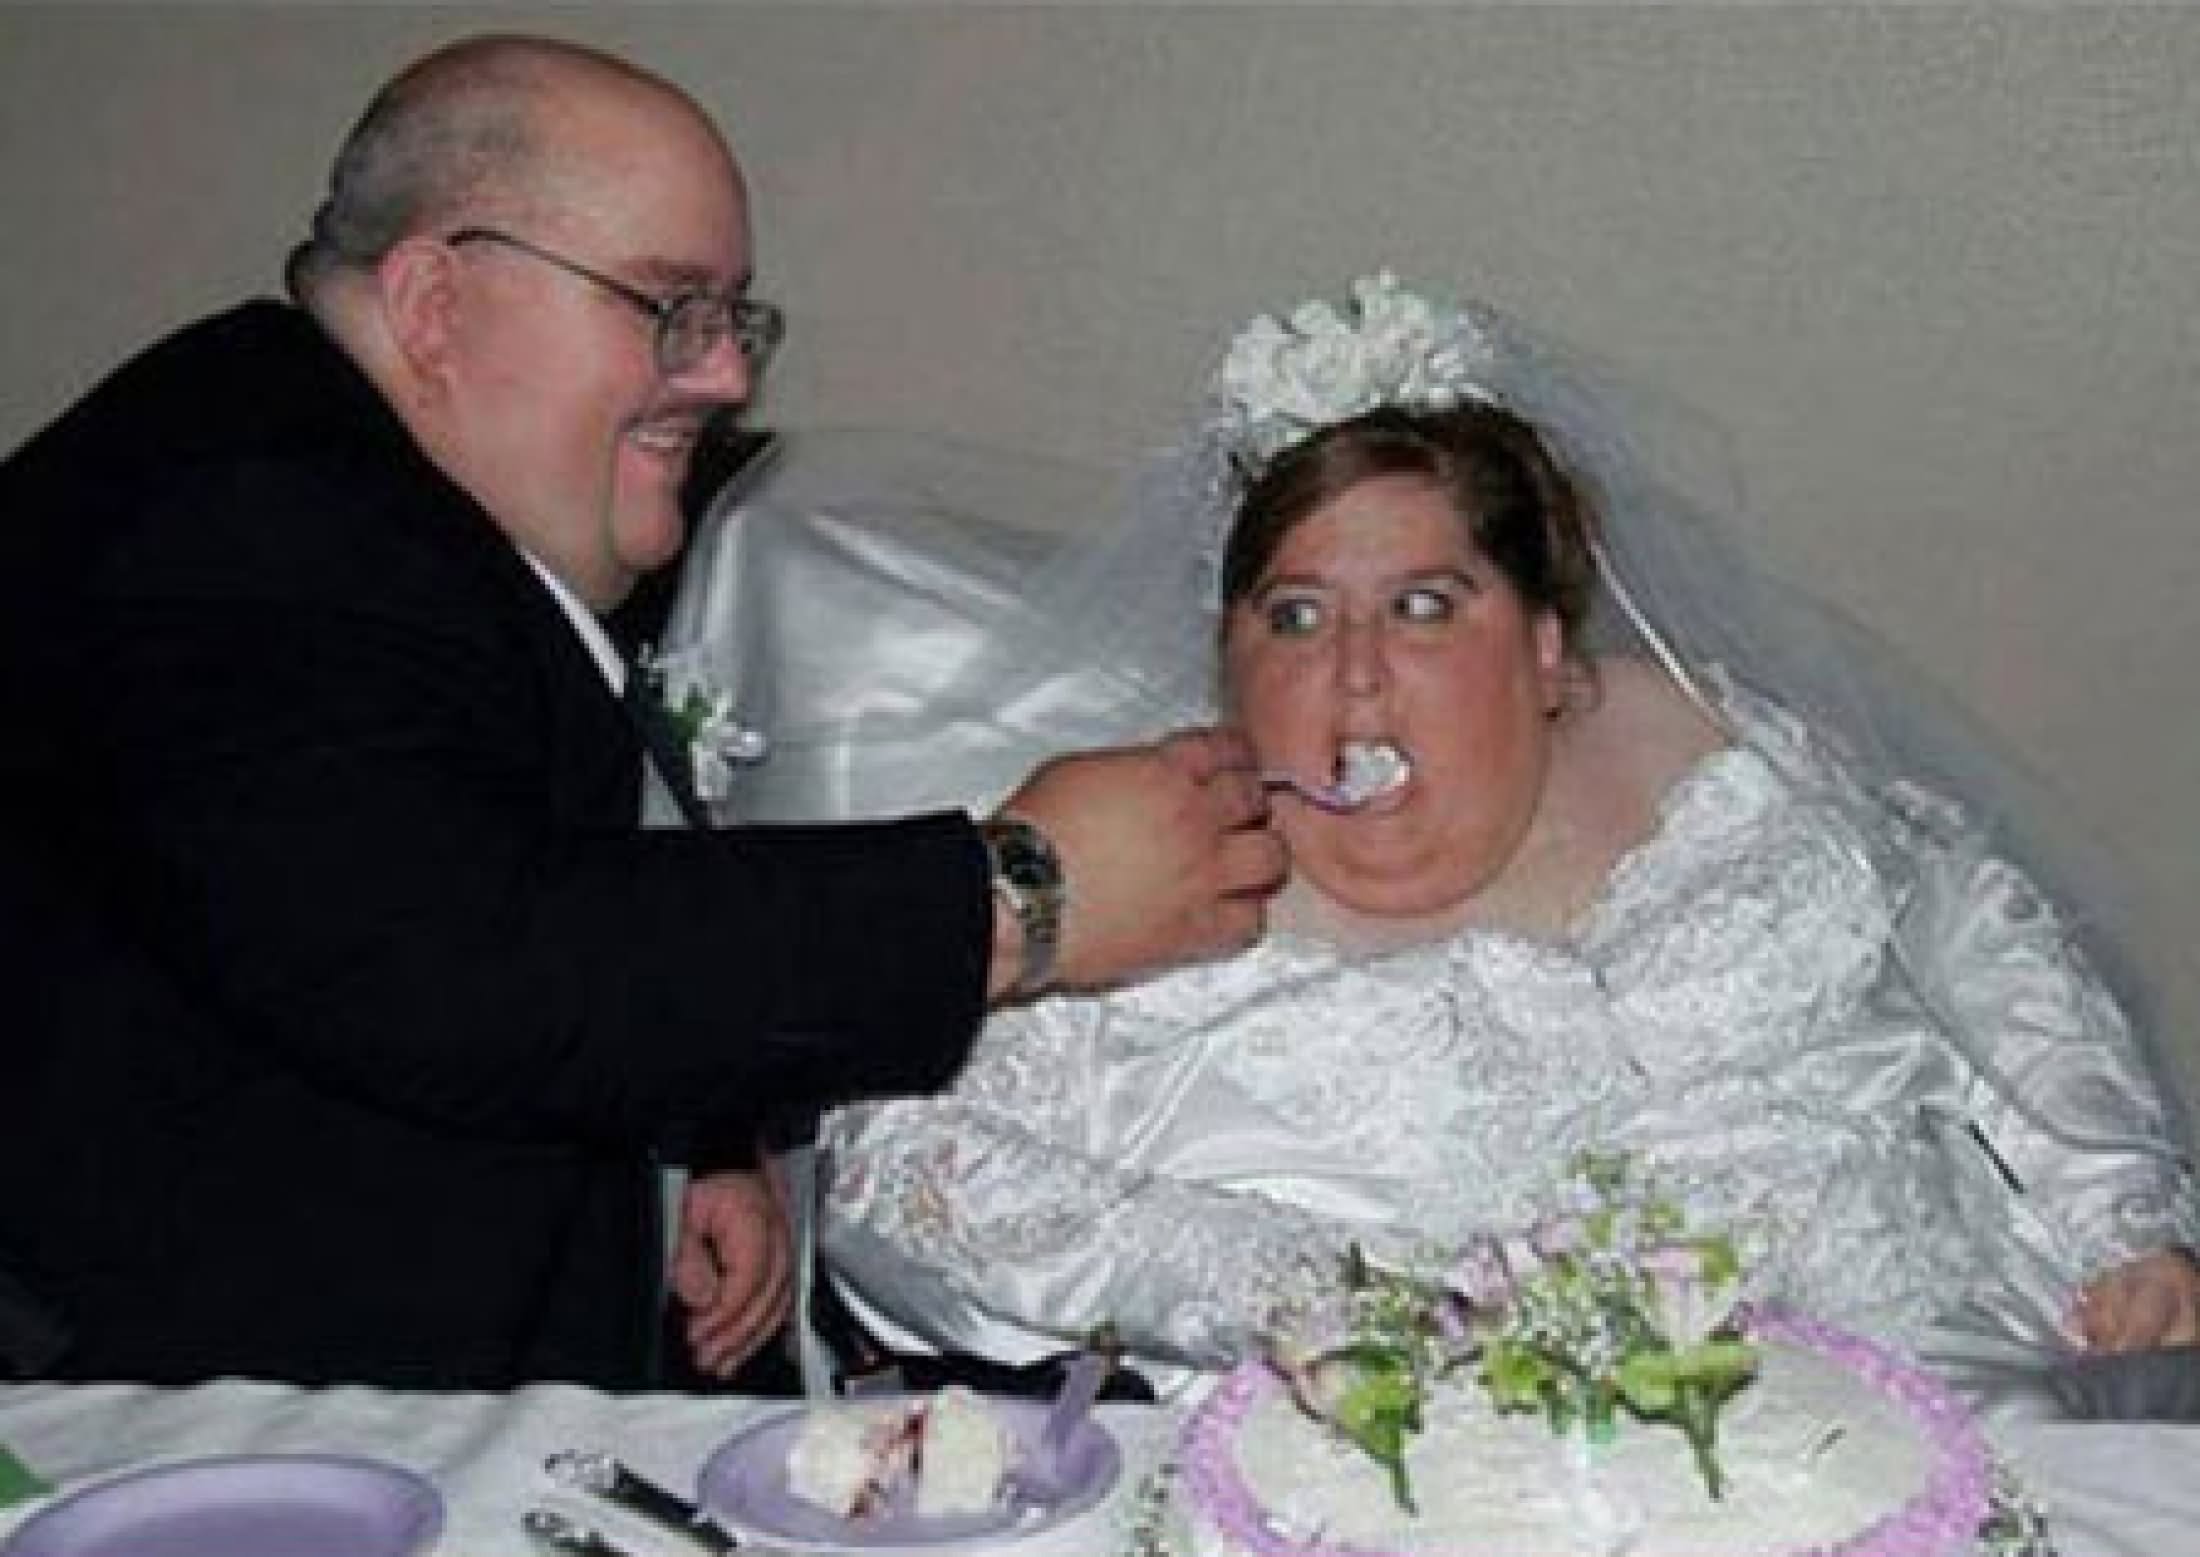 Funny Wedding Couple Image